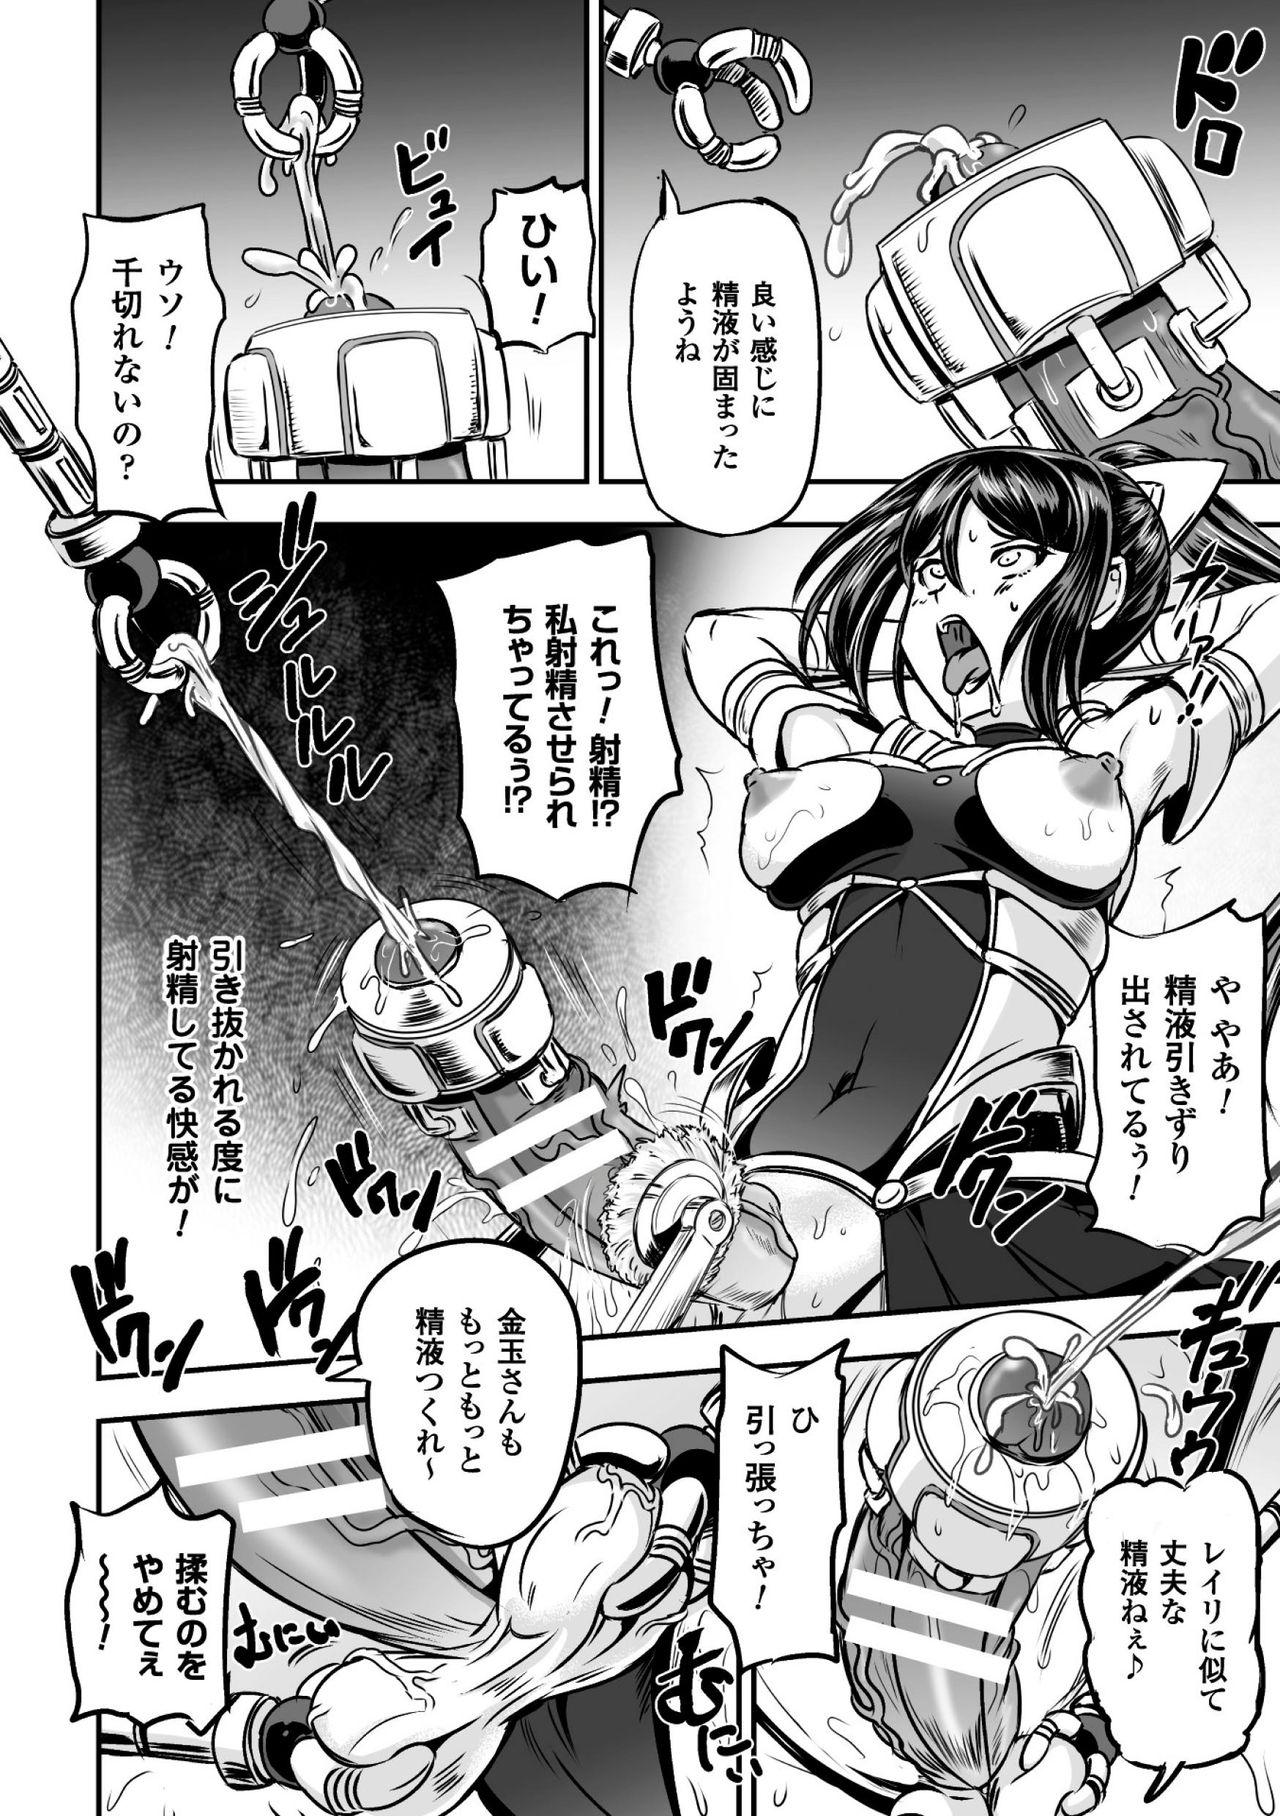 Seigi no Heroine Kangoku File Vol. 9 71